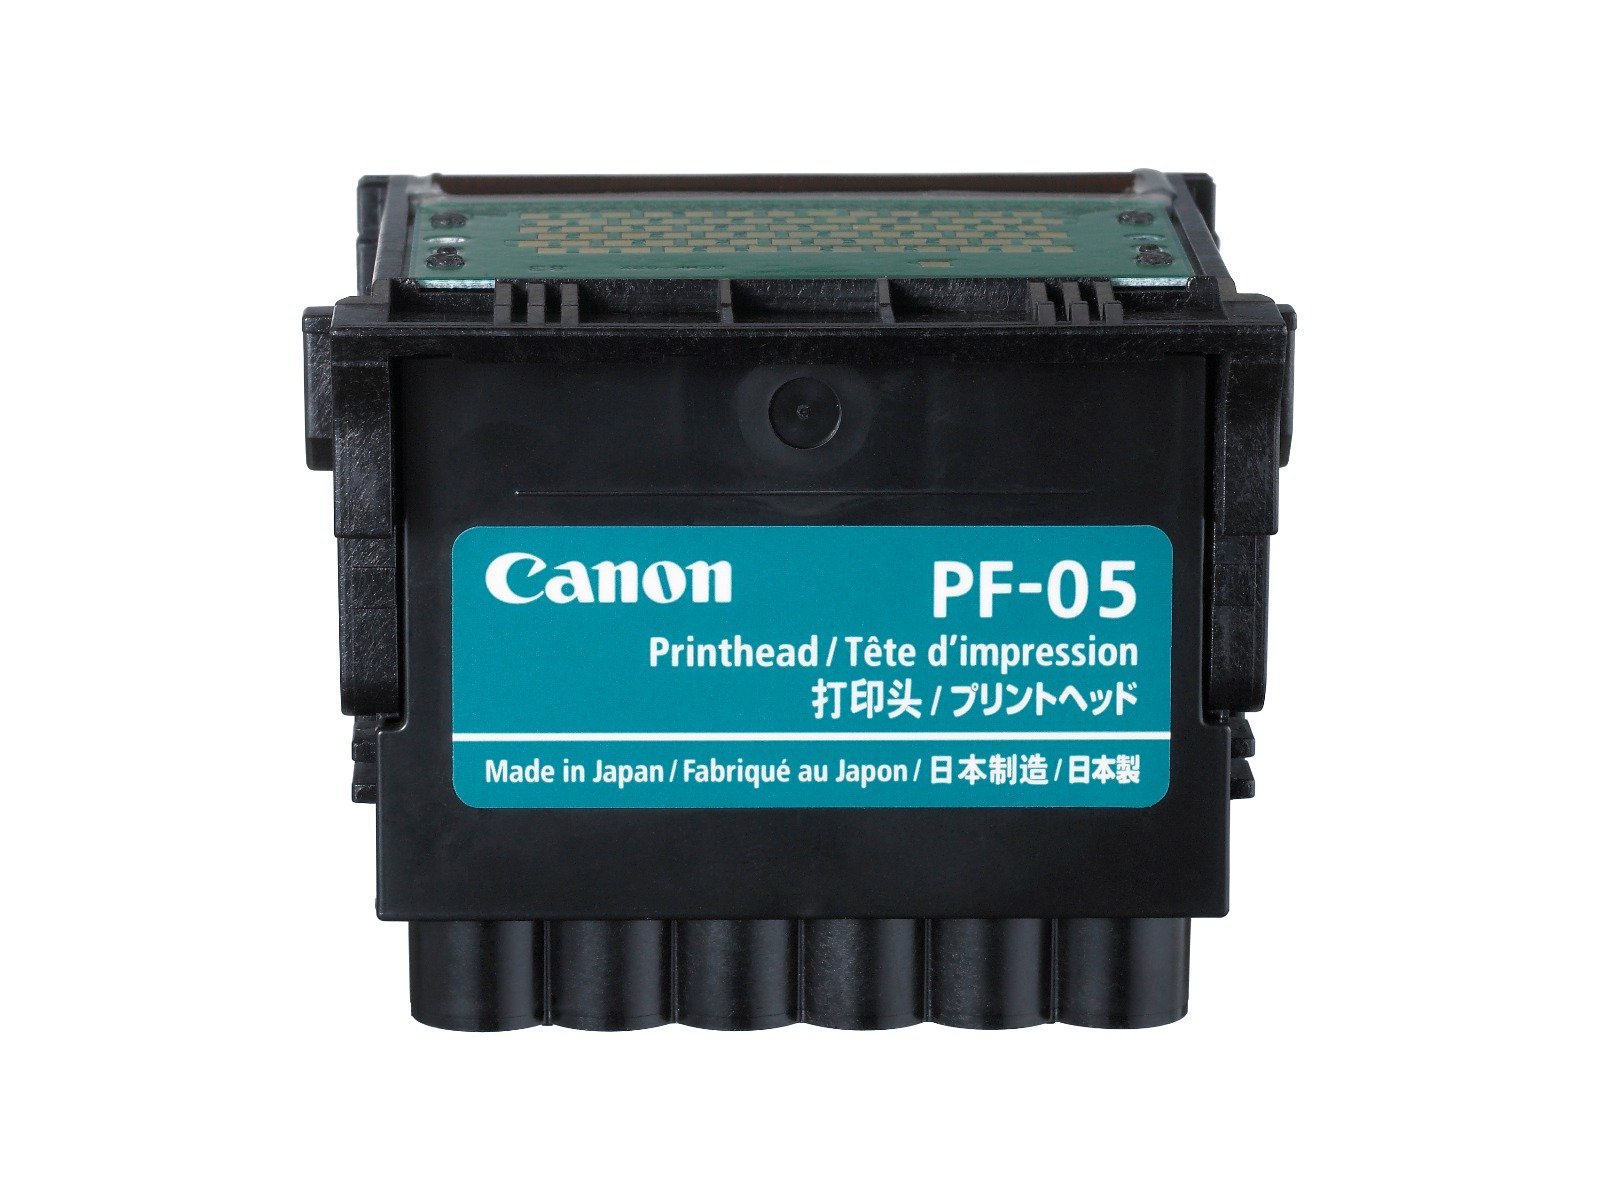 Печатающая головка Canon PF-05 печатающая головка print head 70 magenta